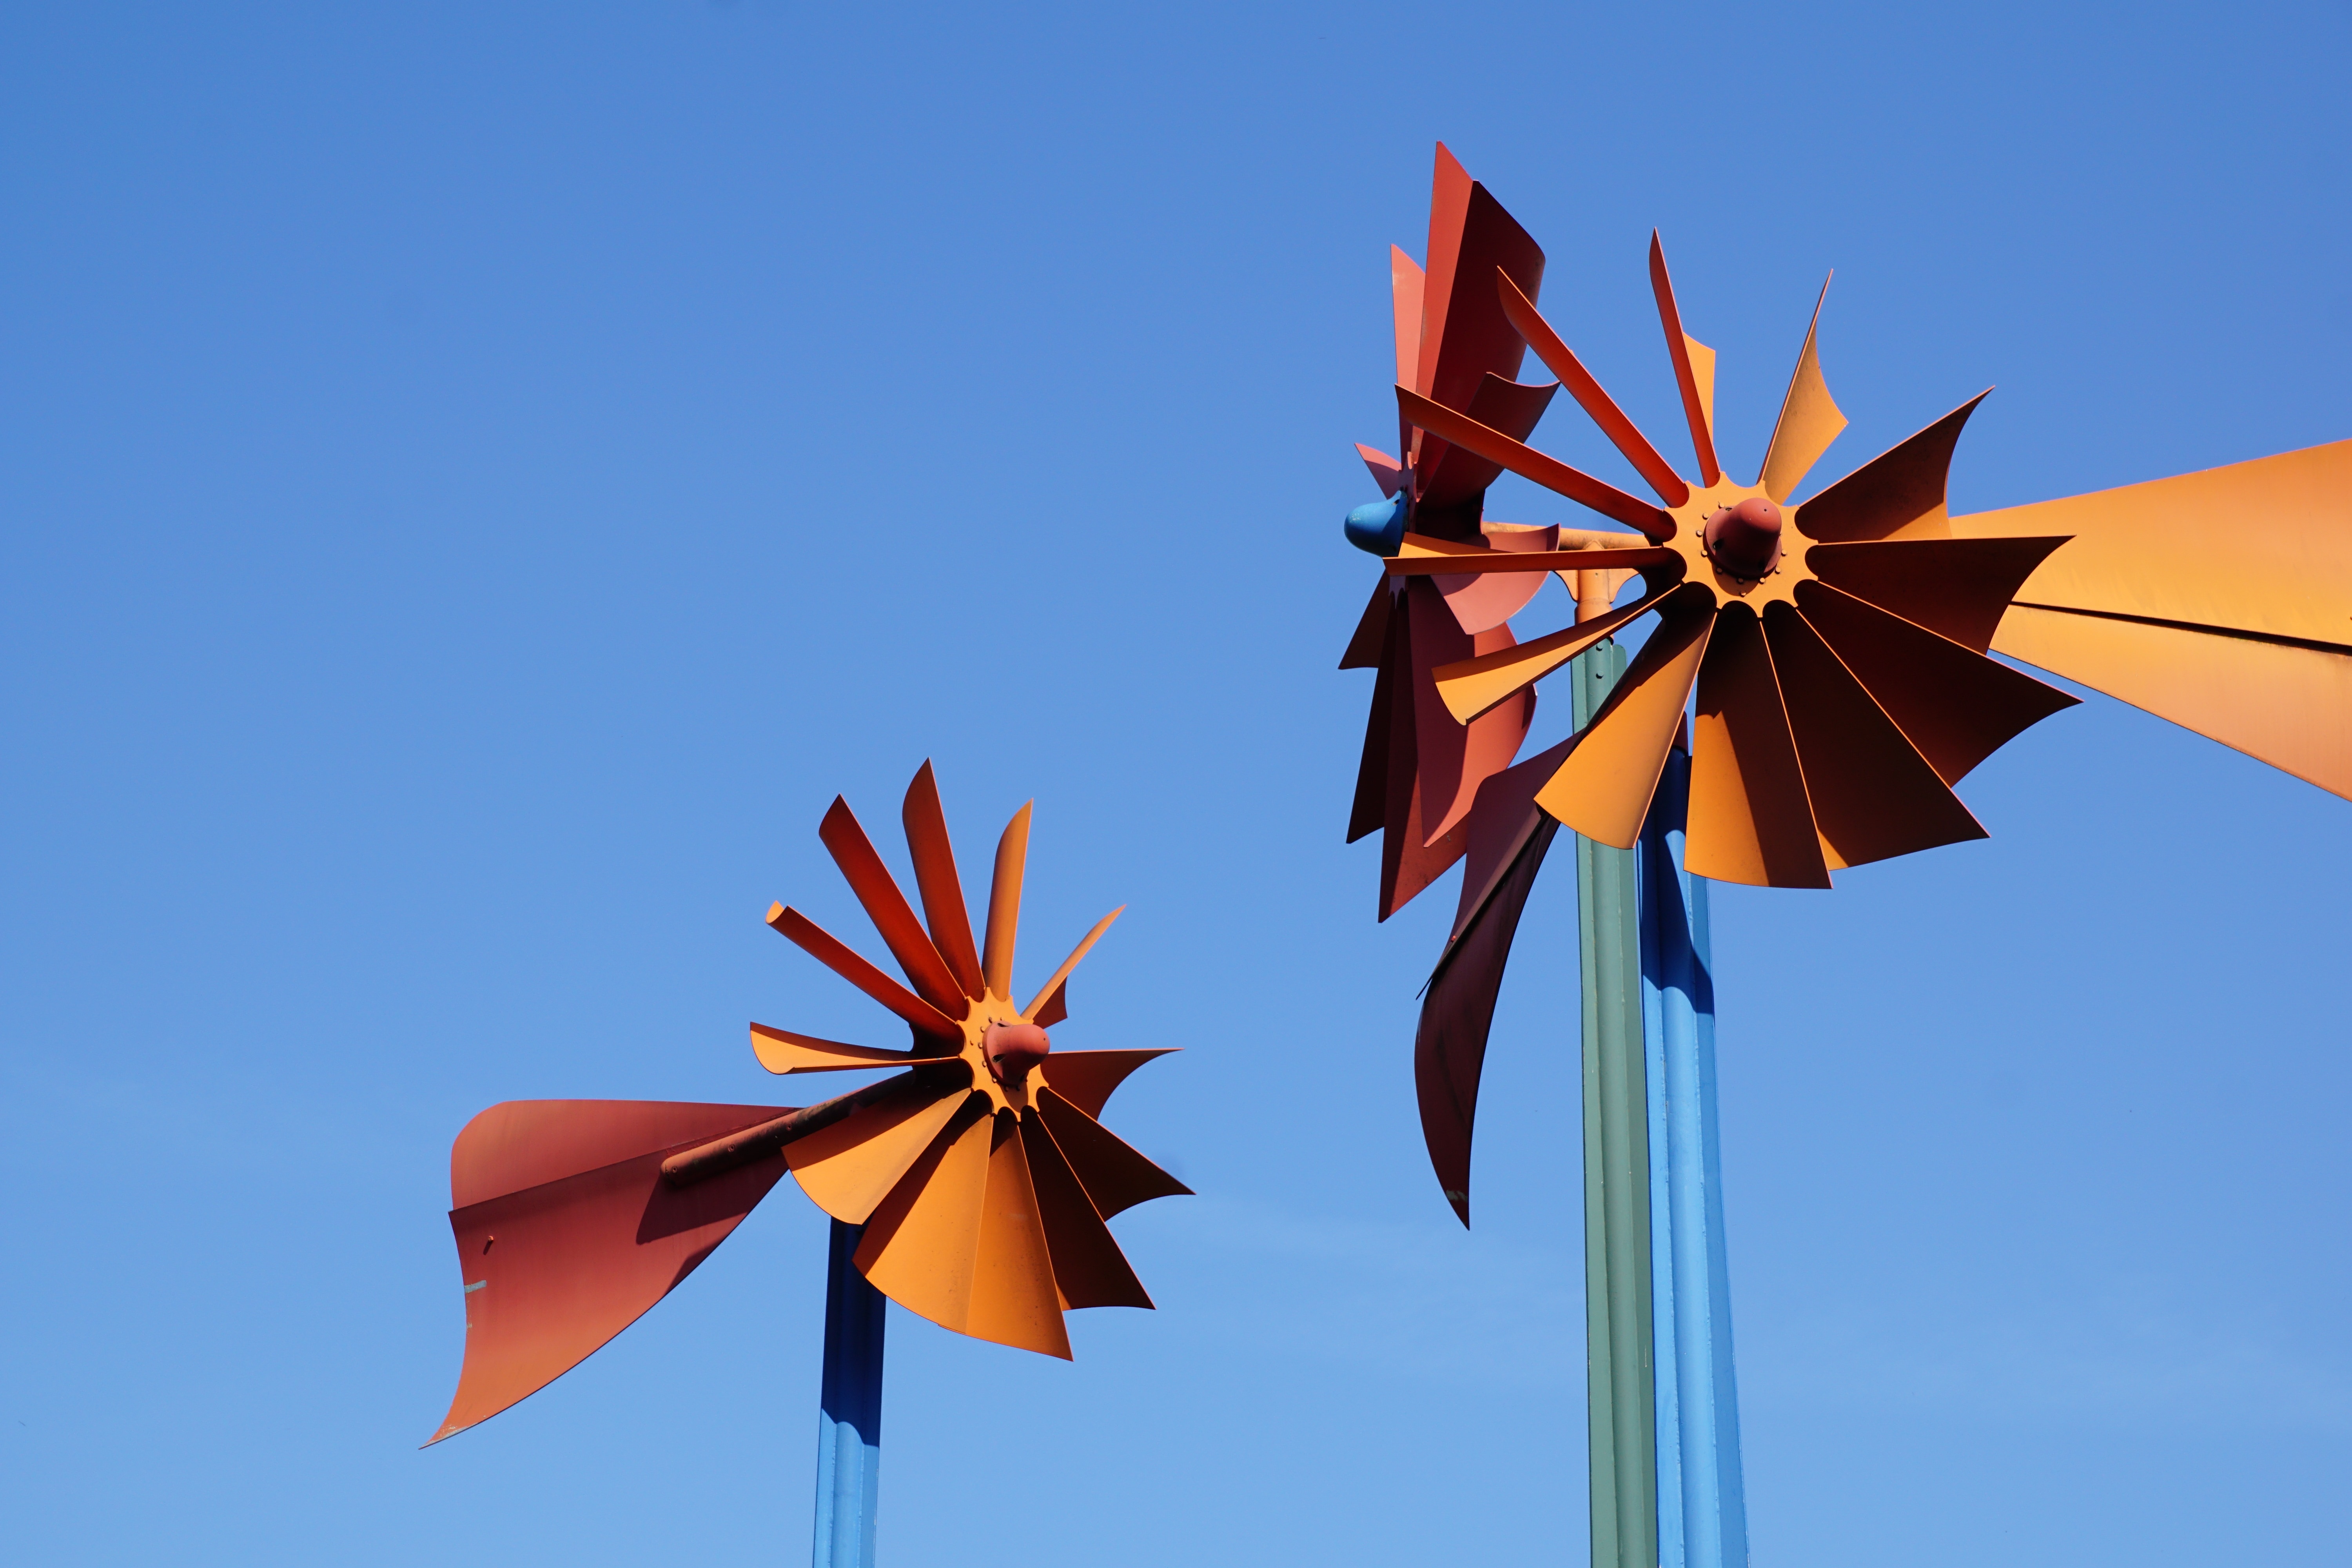 Sky, Wind, Windmill, Turn, Tuttlingen, alternative energy, wind power